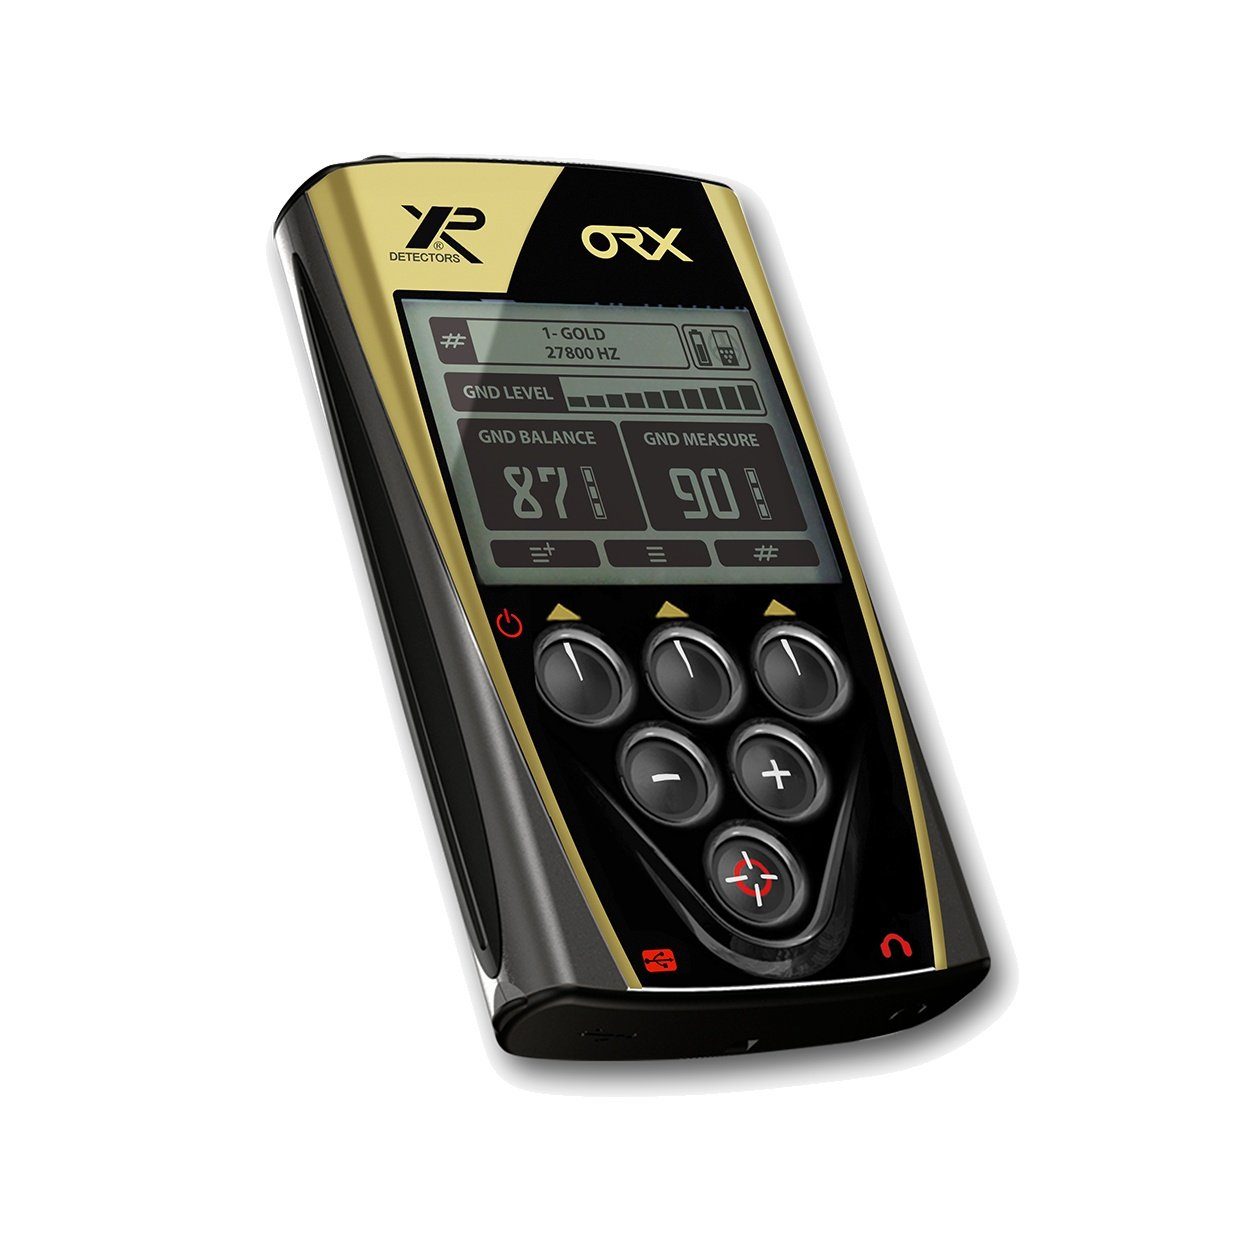 XP Metalldetektor ORX X35 XP RC WSA Metalldetektor 22